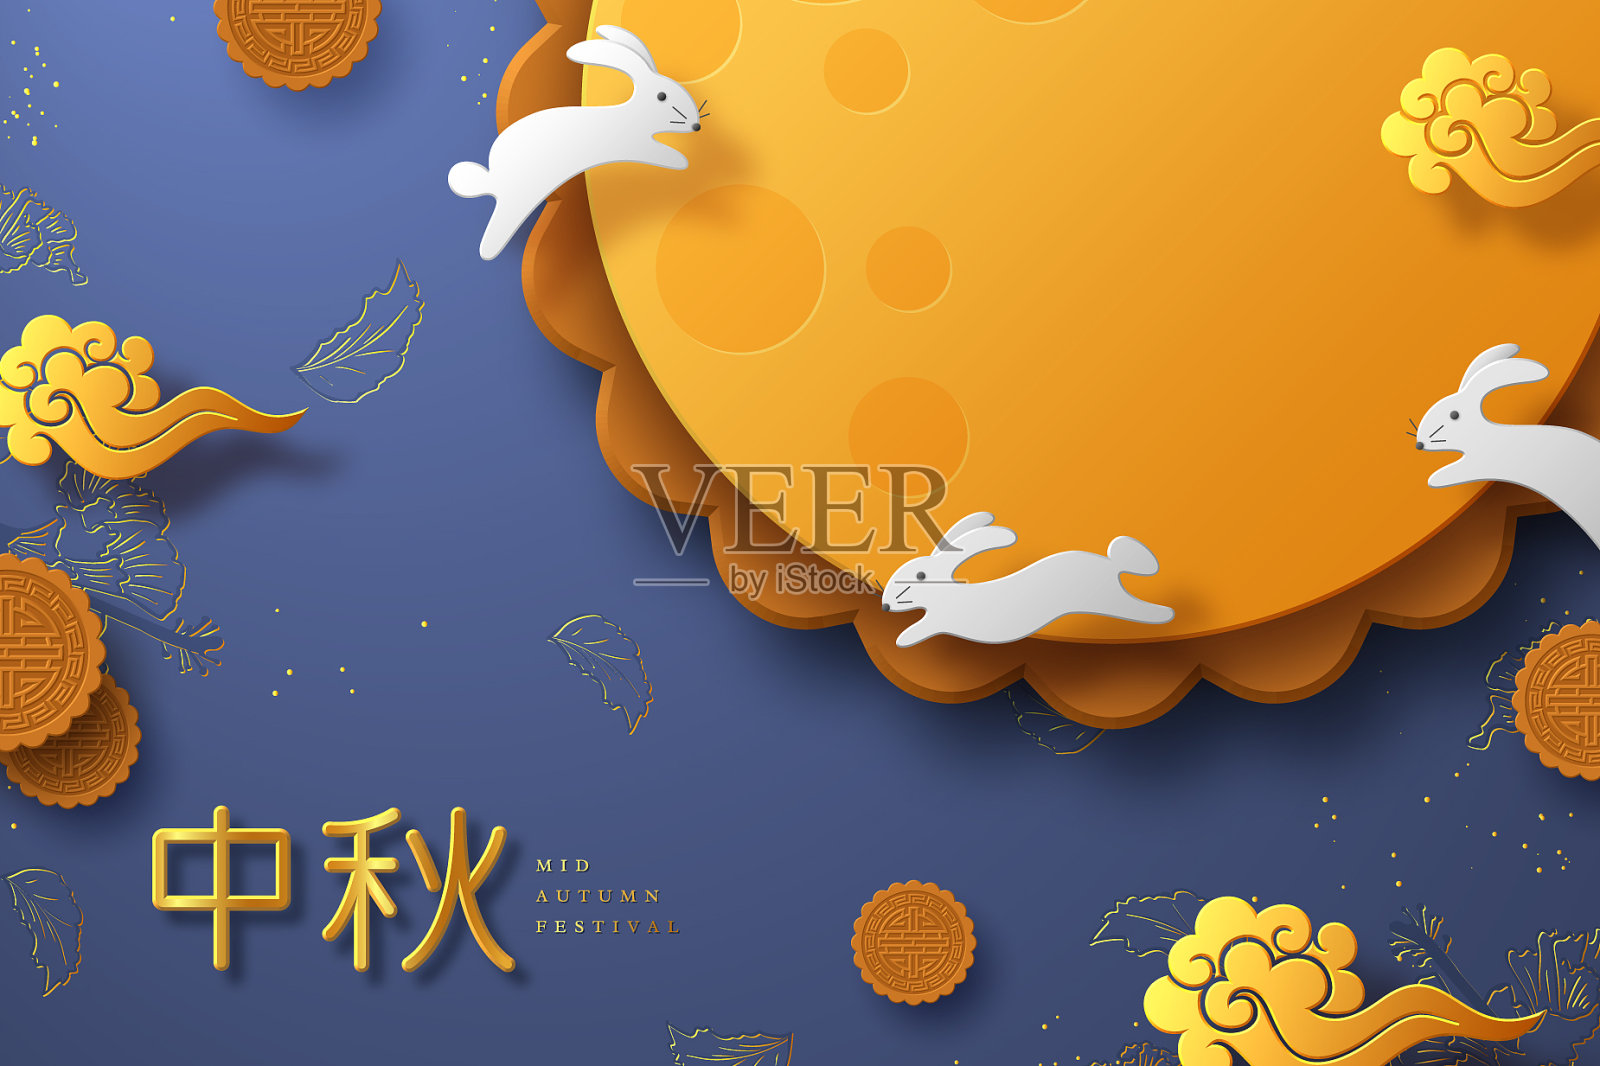 中国中秋节横幅设计模板素材